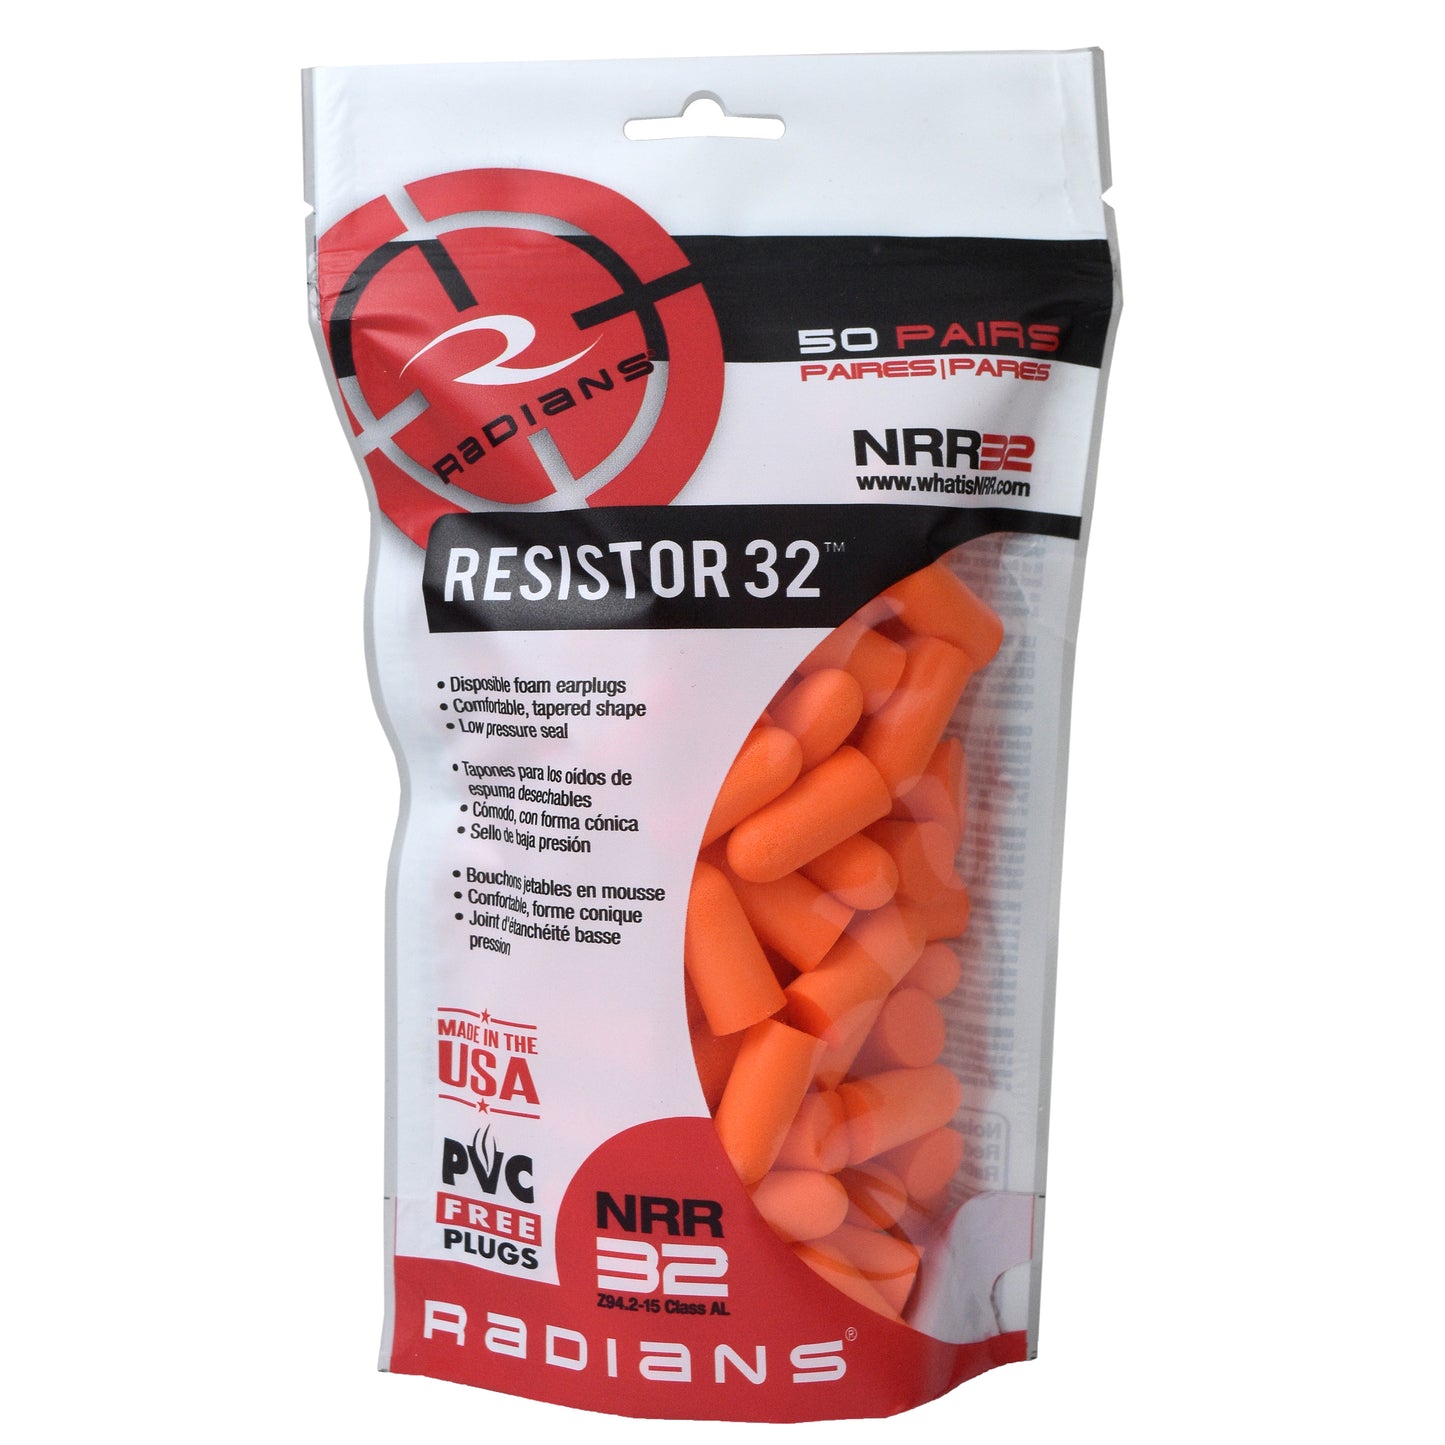 Radians Resistor® 32 Foam Earplugs - 50 Pair Bag Uncorded